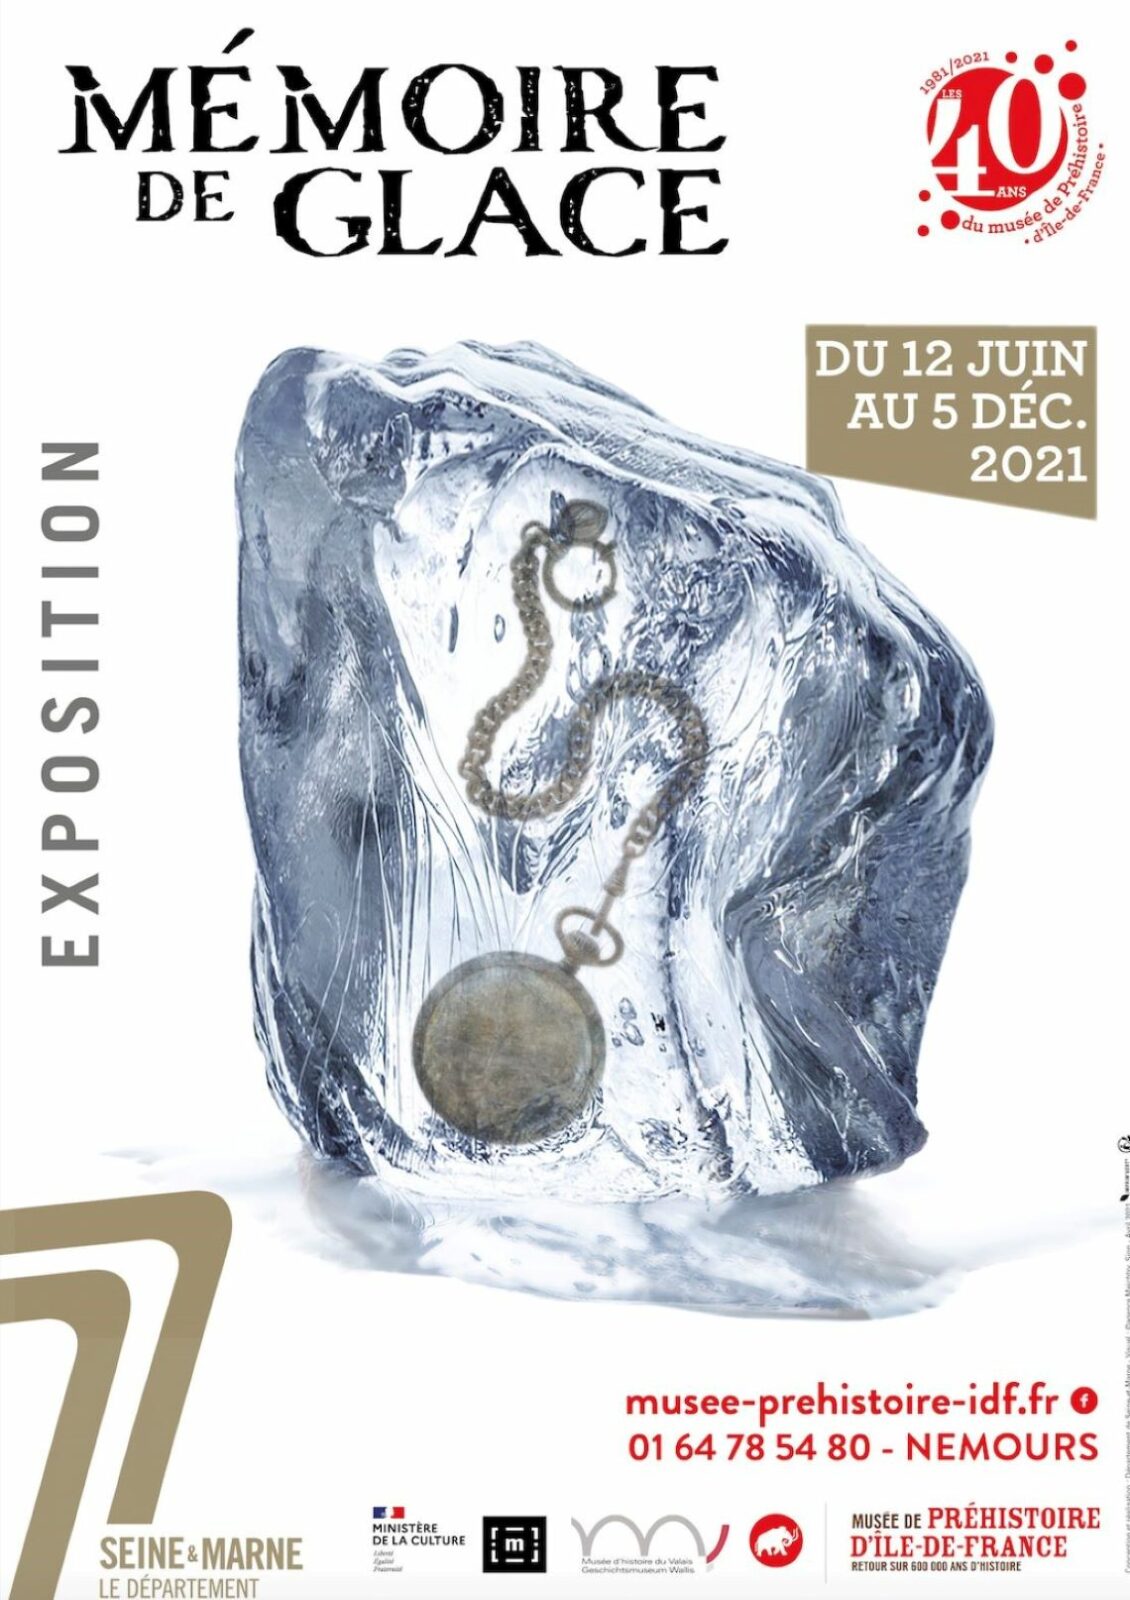 « Mémoire de glace » : archéologie glaciaire au musée de la préhistoire de Nemours